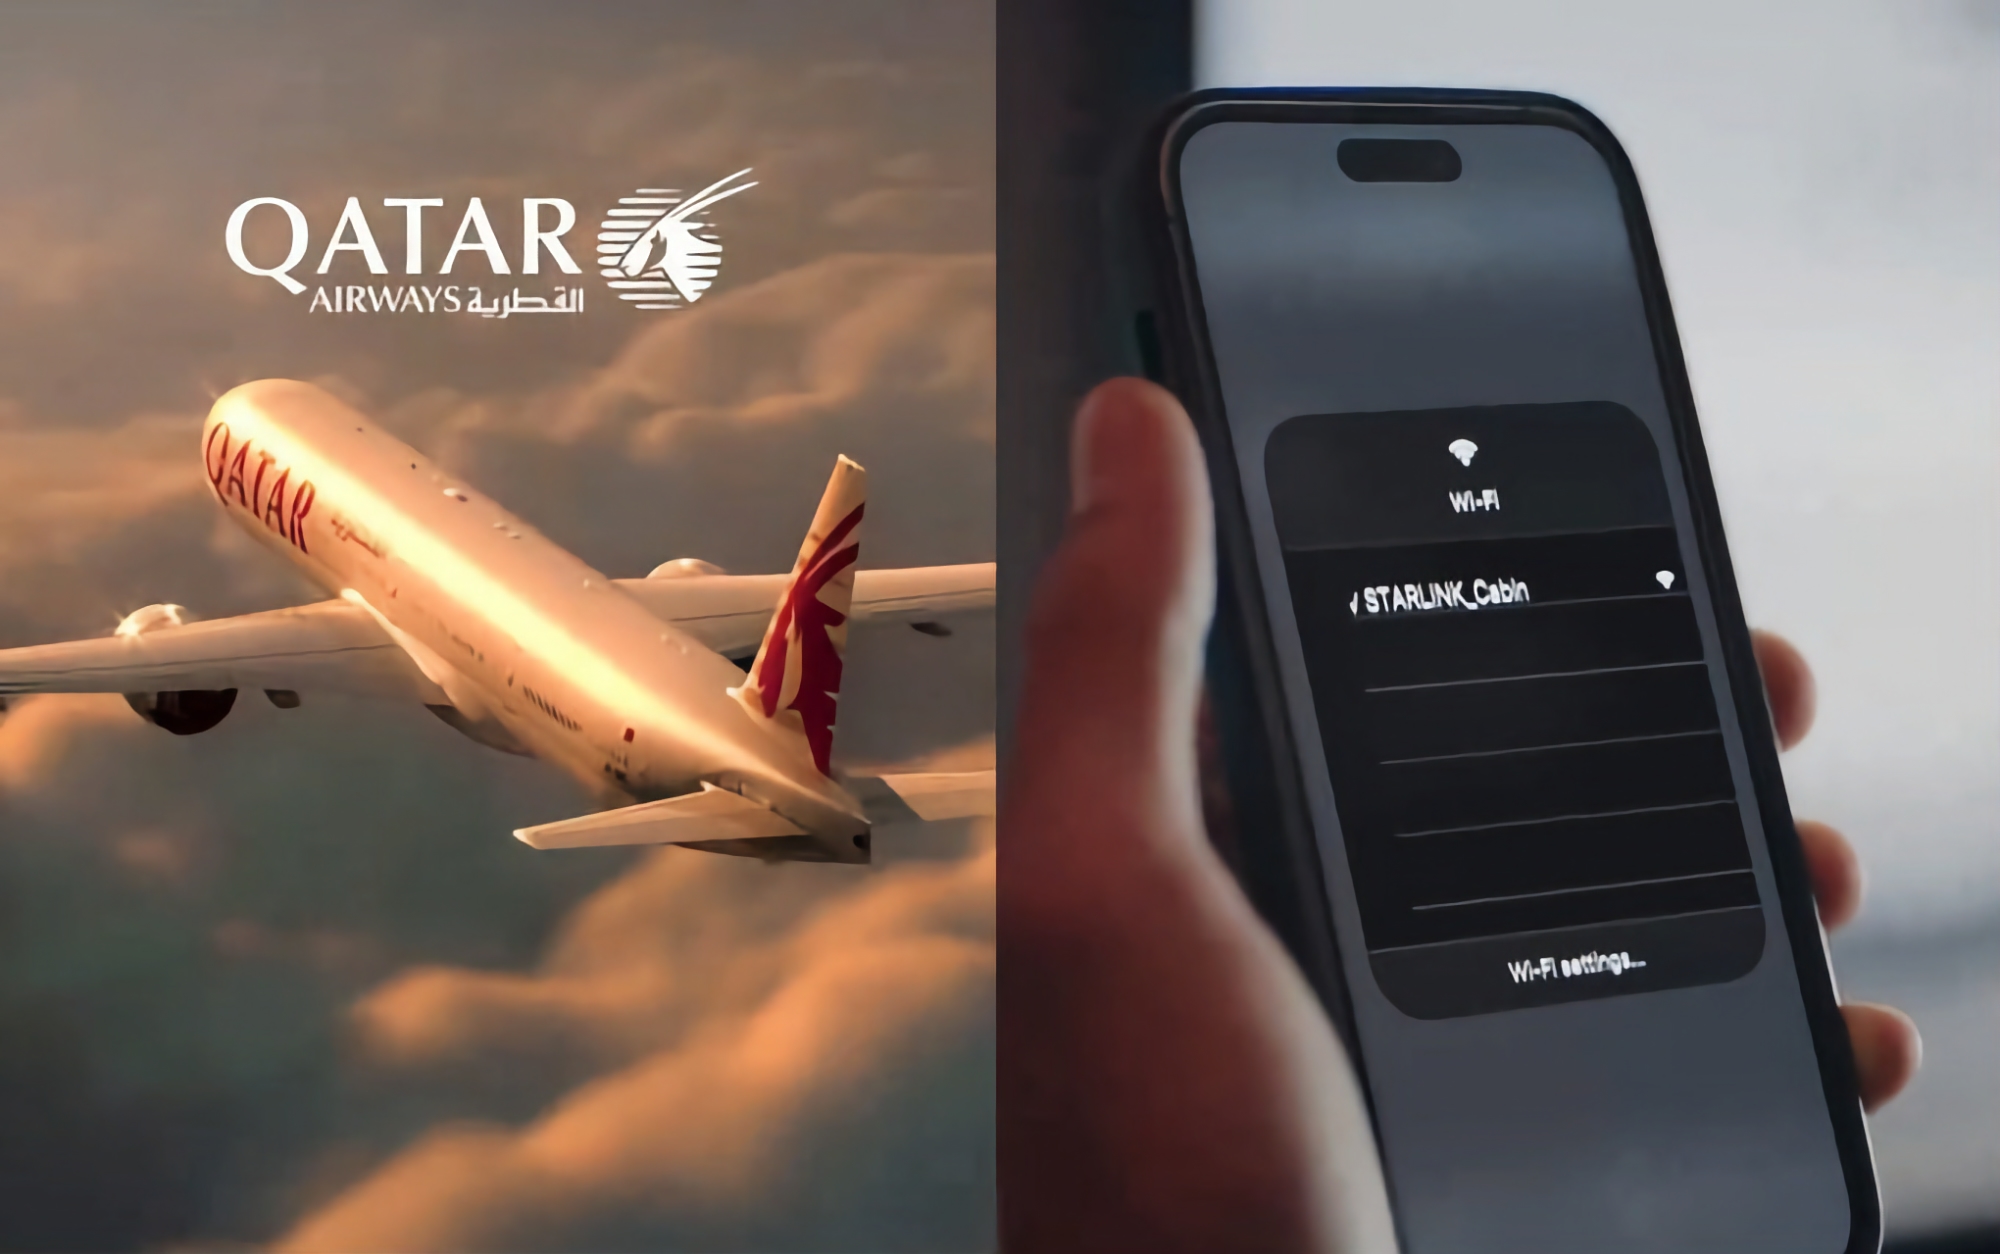 Prędkość do 500 Mb/s na wysokości 13 000 metrów: linie lotnicze Qatar Airways zainstalują internet satelitarny Starlink firmy Ilon Musk w niektórych samolotach Boeing 777-300.